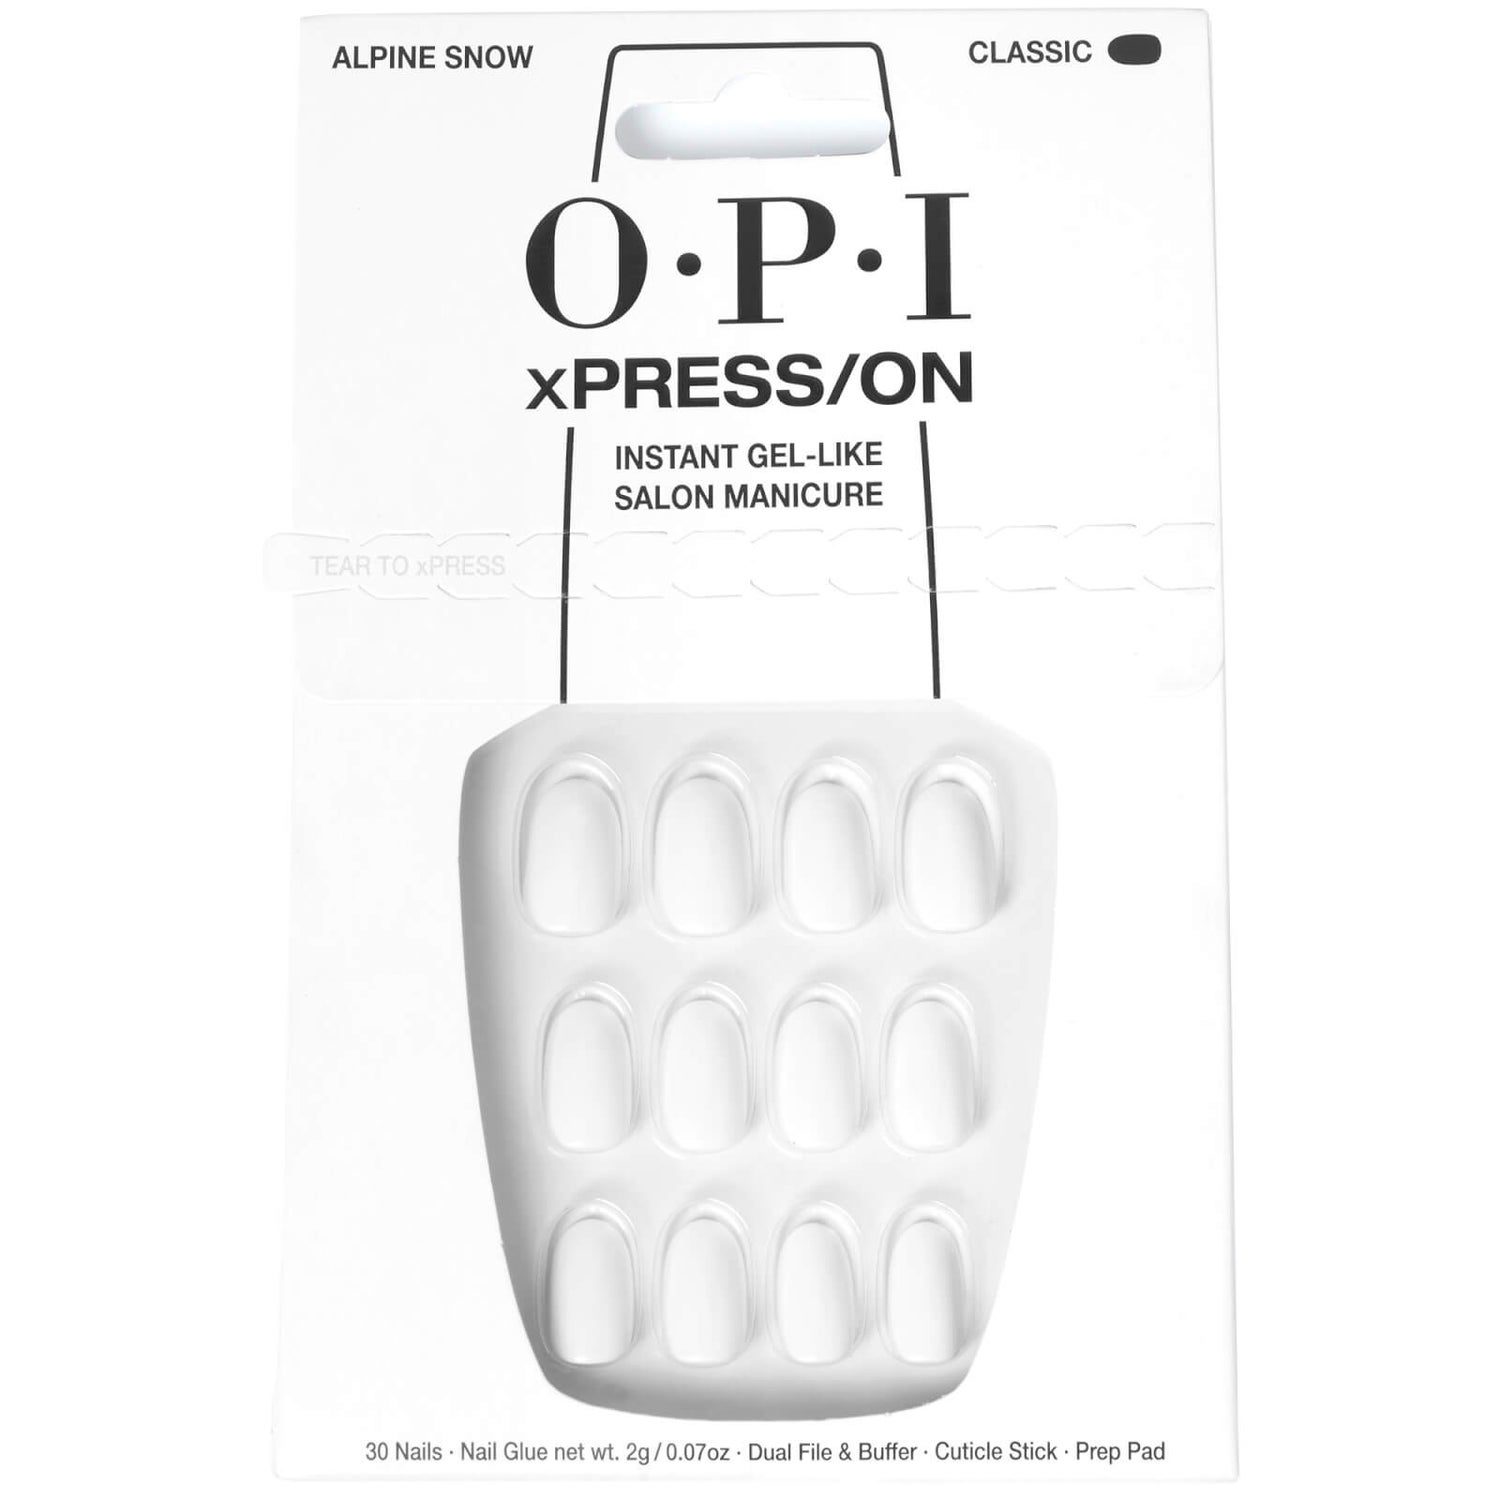 OPI xPRESS/ON - Alpine Snow Press On Nails Gel-Like Salon Manicure